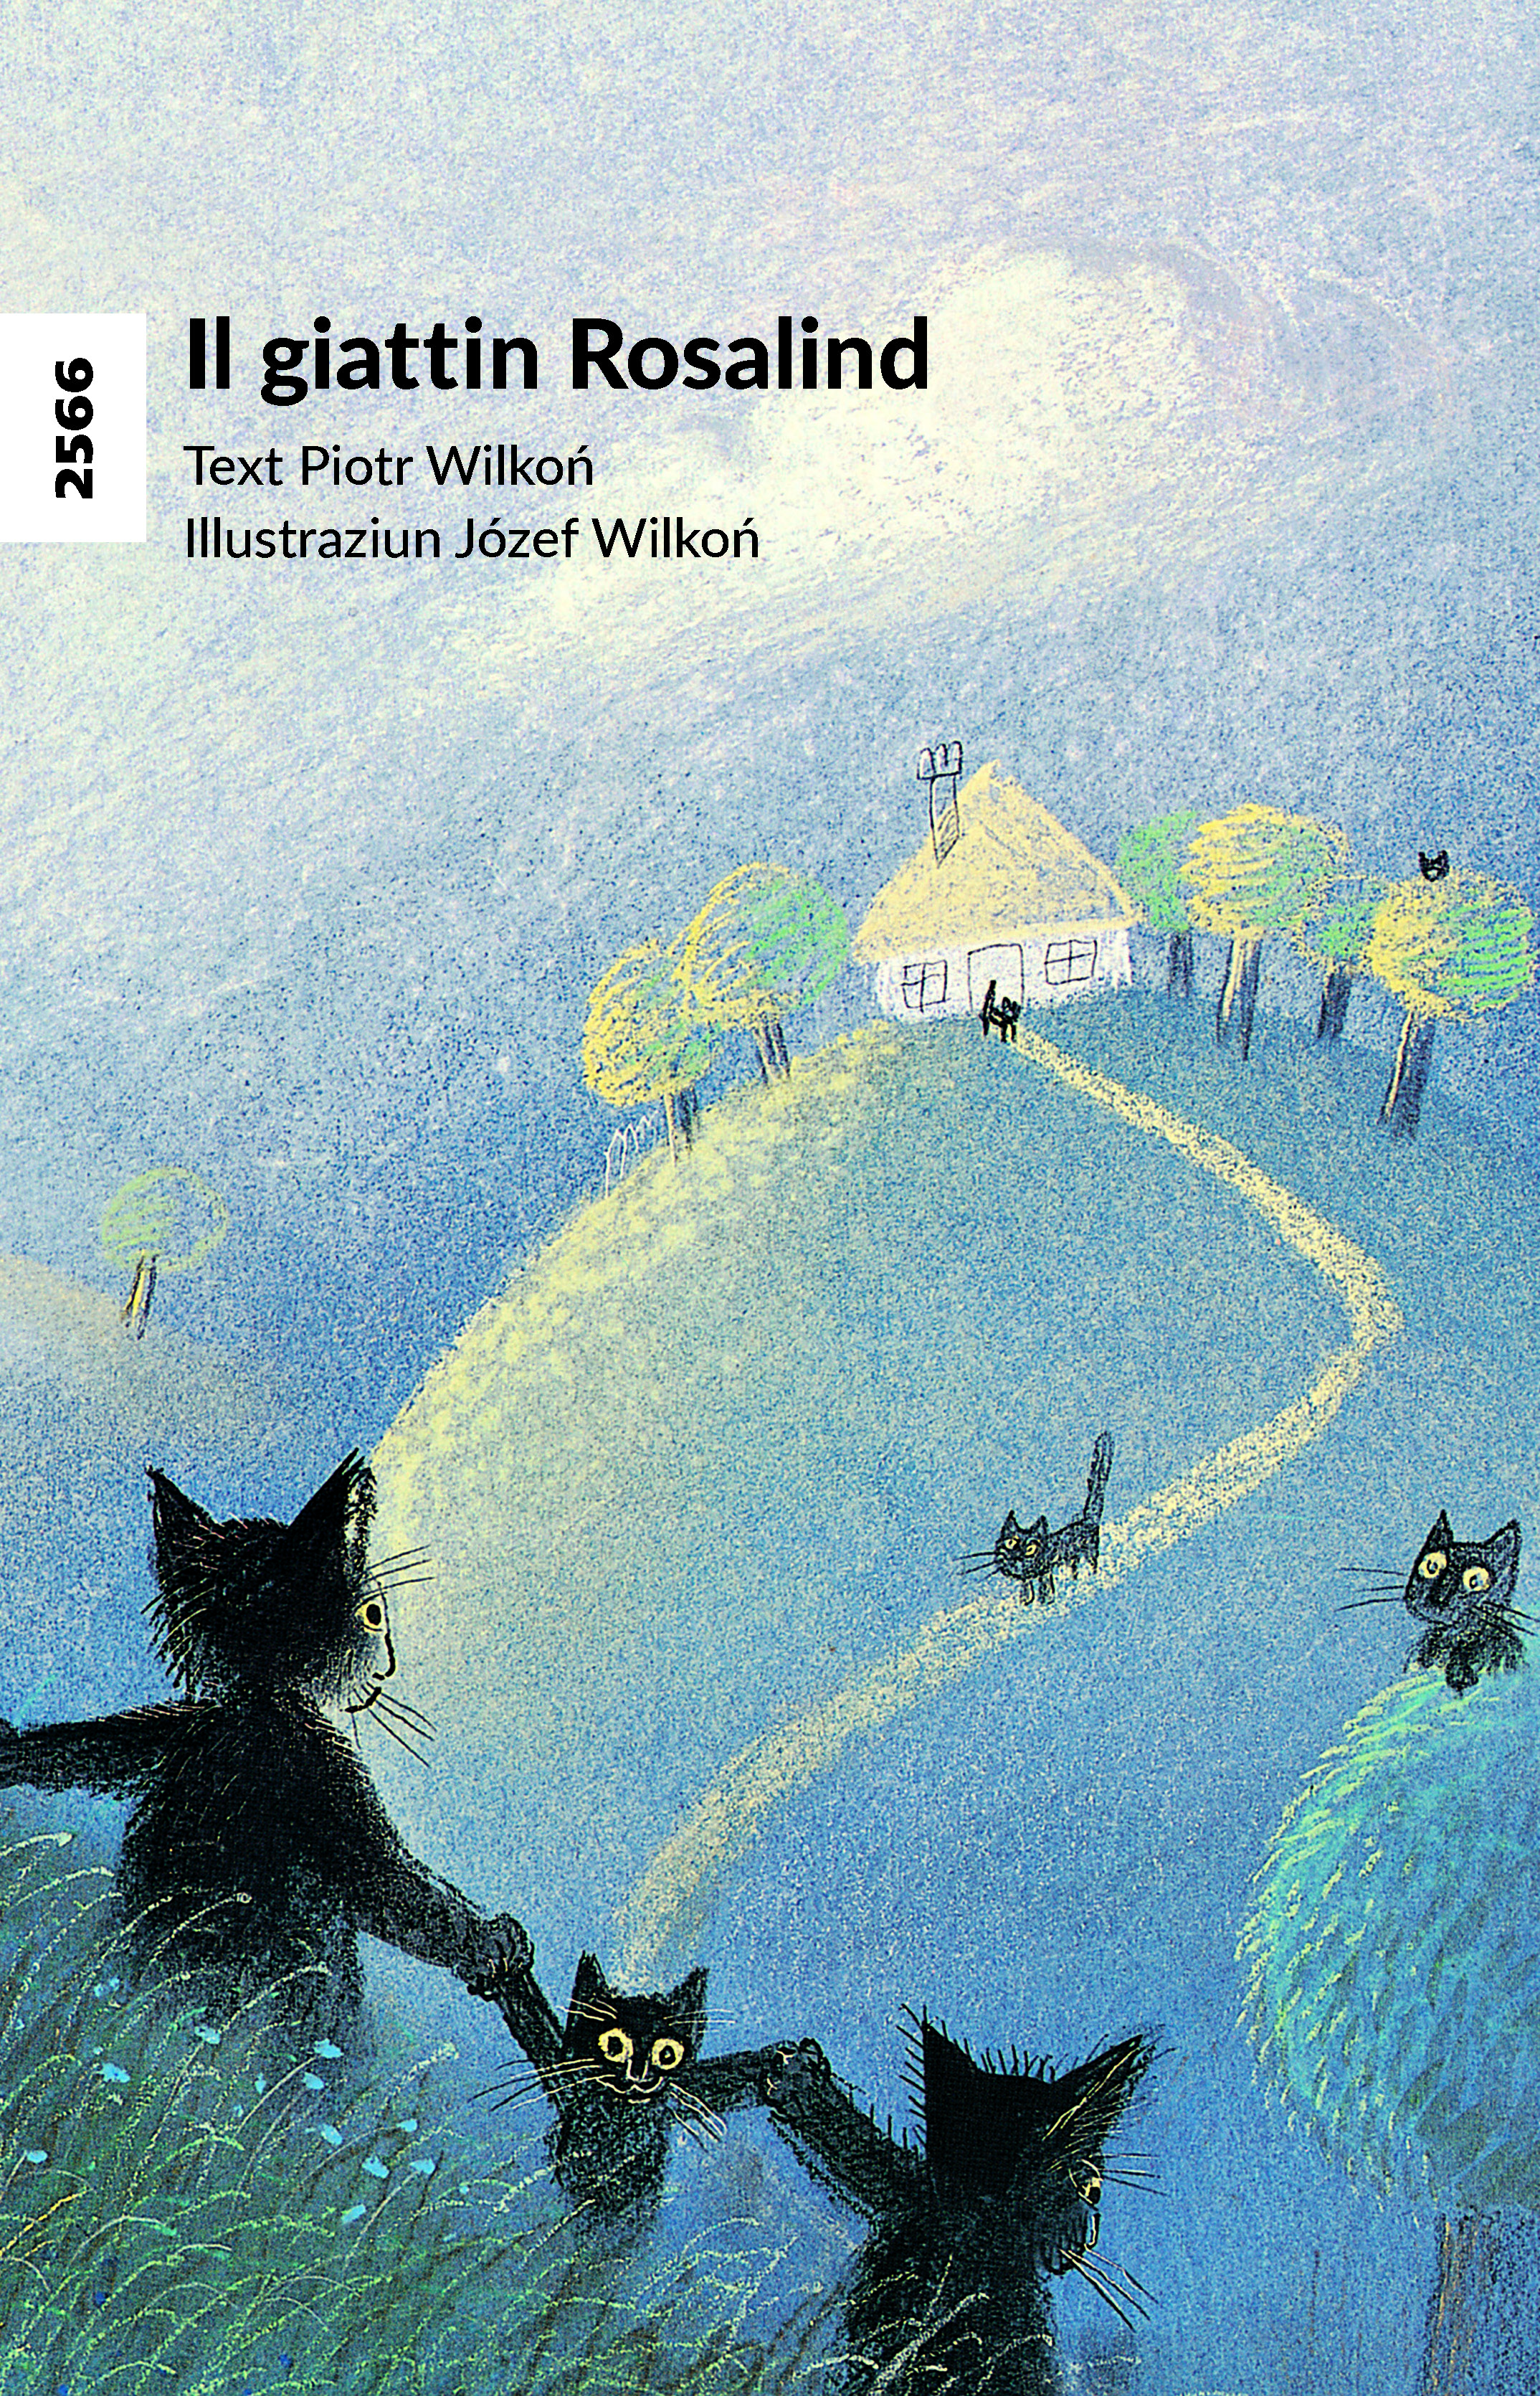 Il giattin Rosalind, ein Kinderbuch von Piotr Wilkoń, Illustration von Józef Wilkoń, SJW Verlag, Katzengeschichte, Klassiker